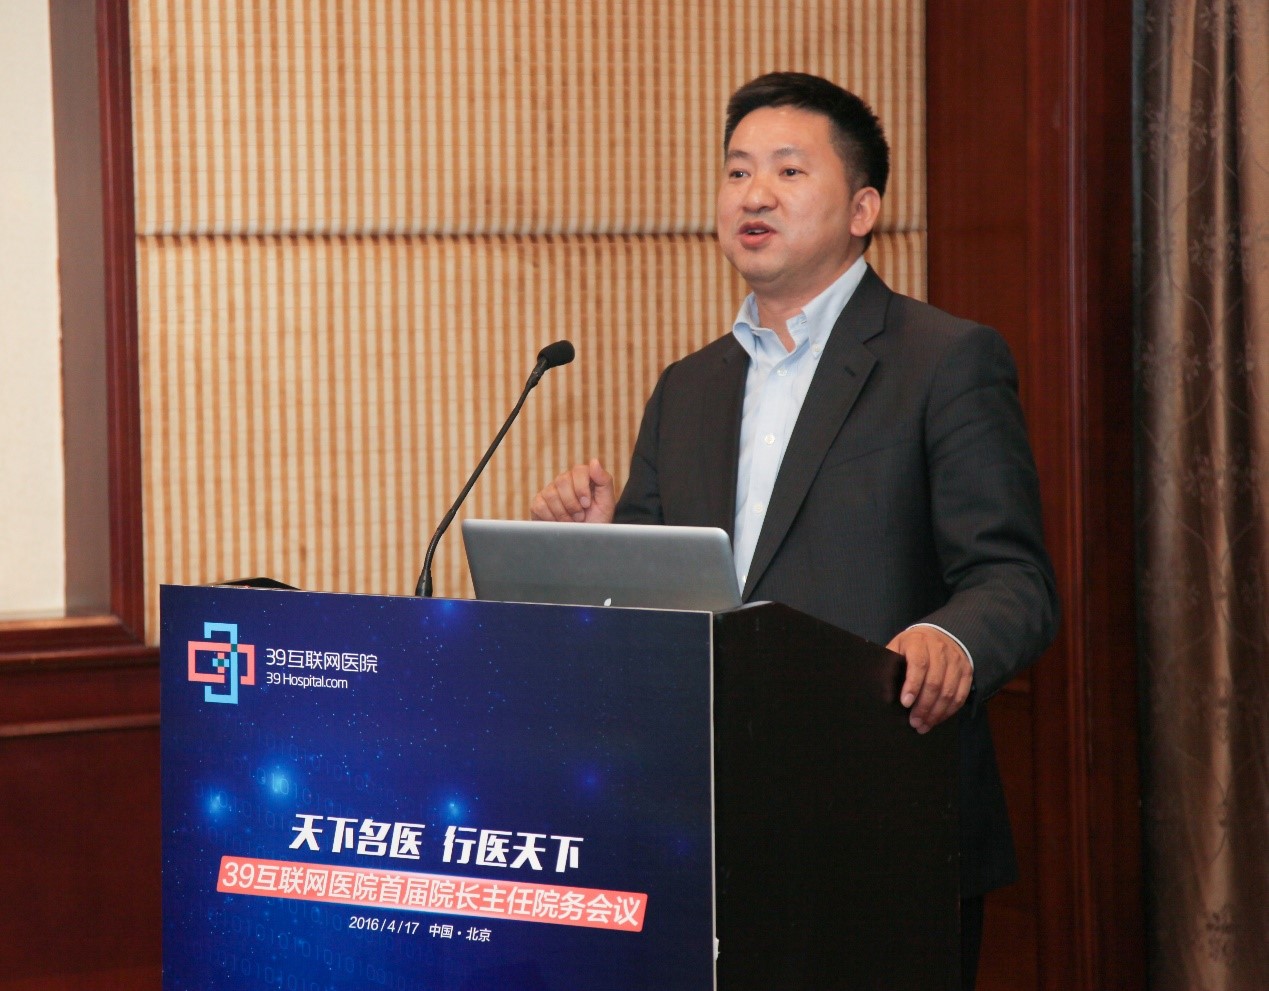 39互联网医院总经理庞成林讲解医院未来的运营规划